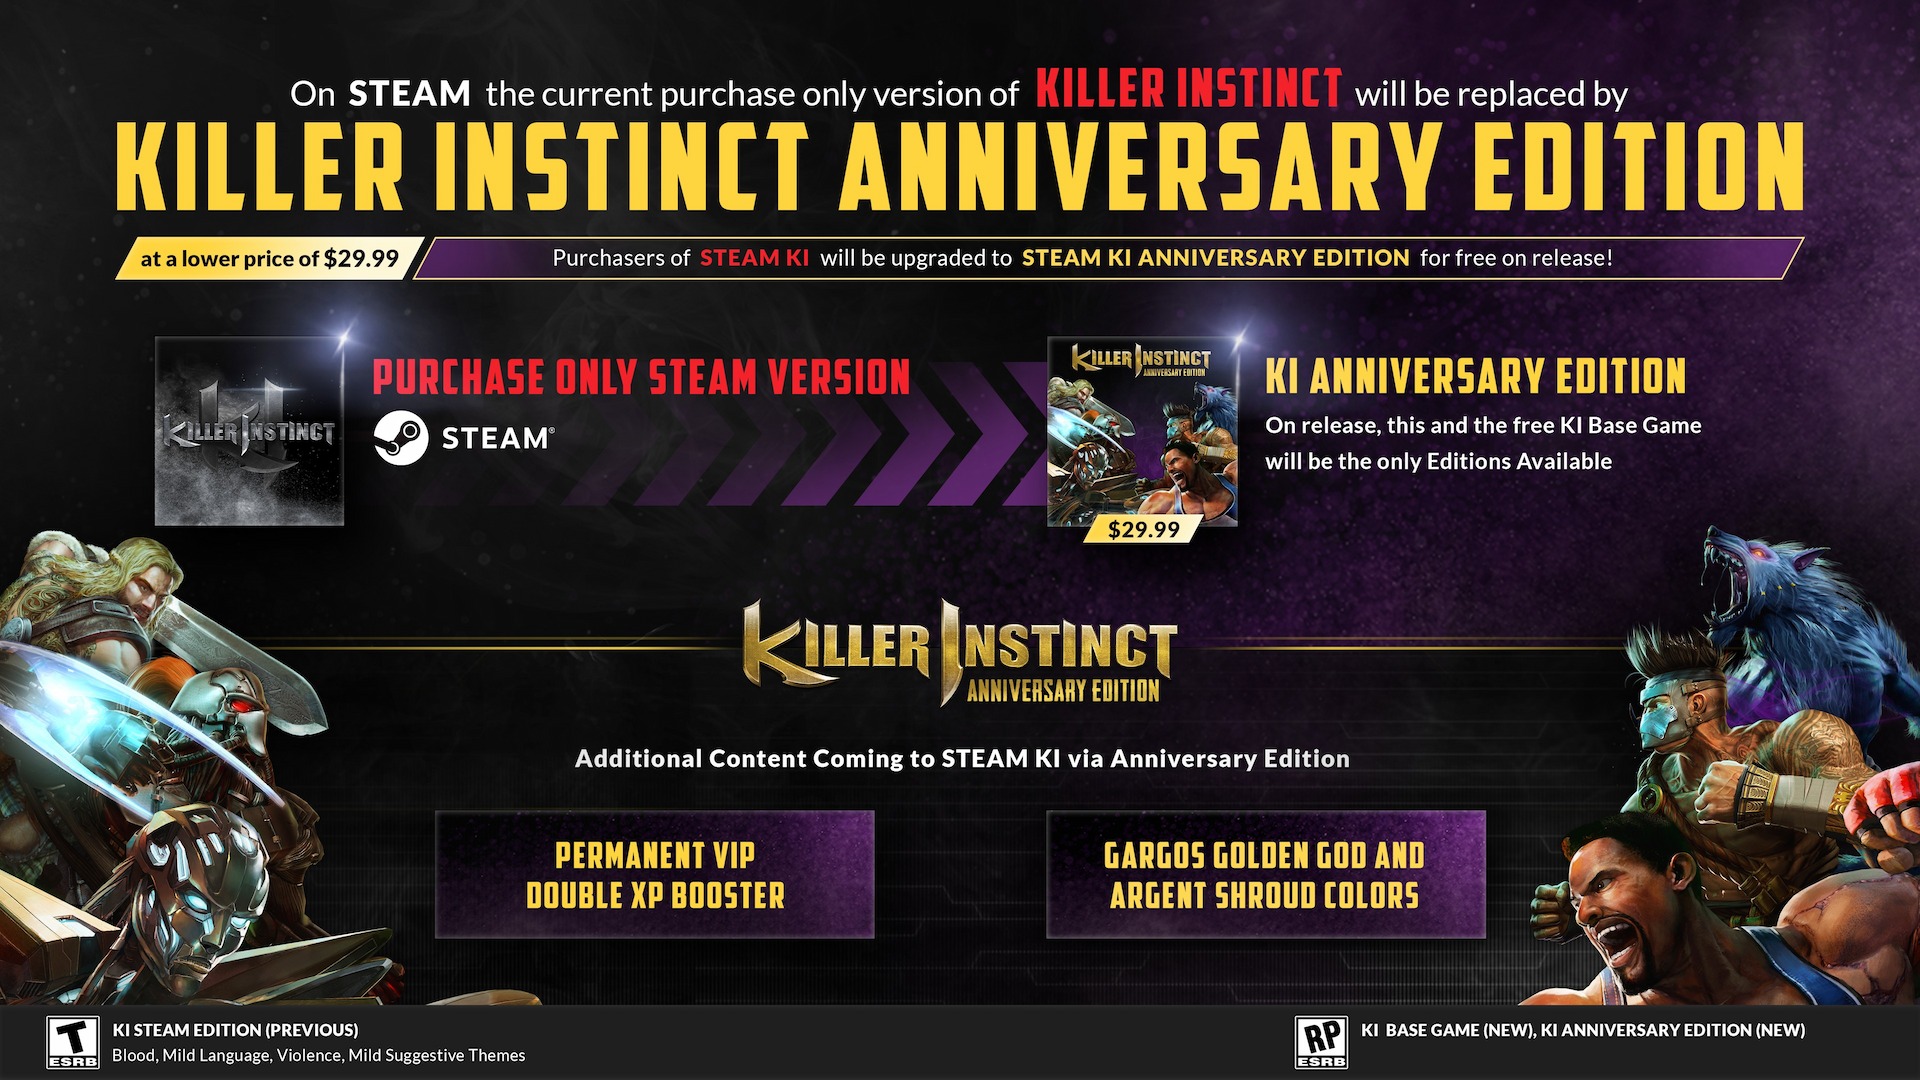 Imagen informativa de Killer Instinct del desarrollador que muestra detalles sobre la edición Steam